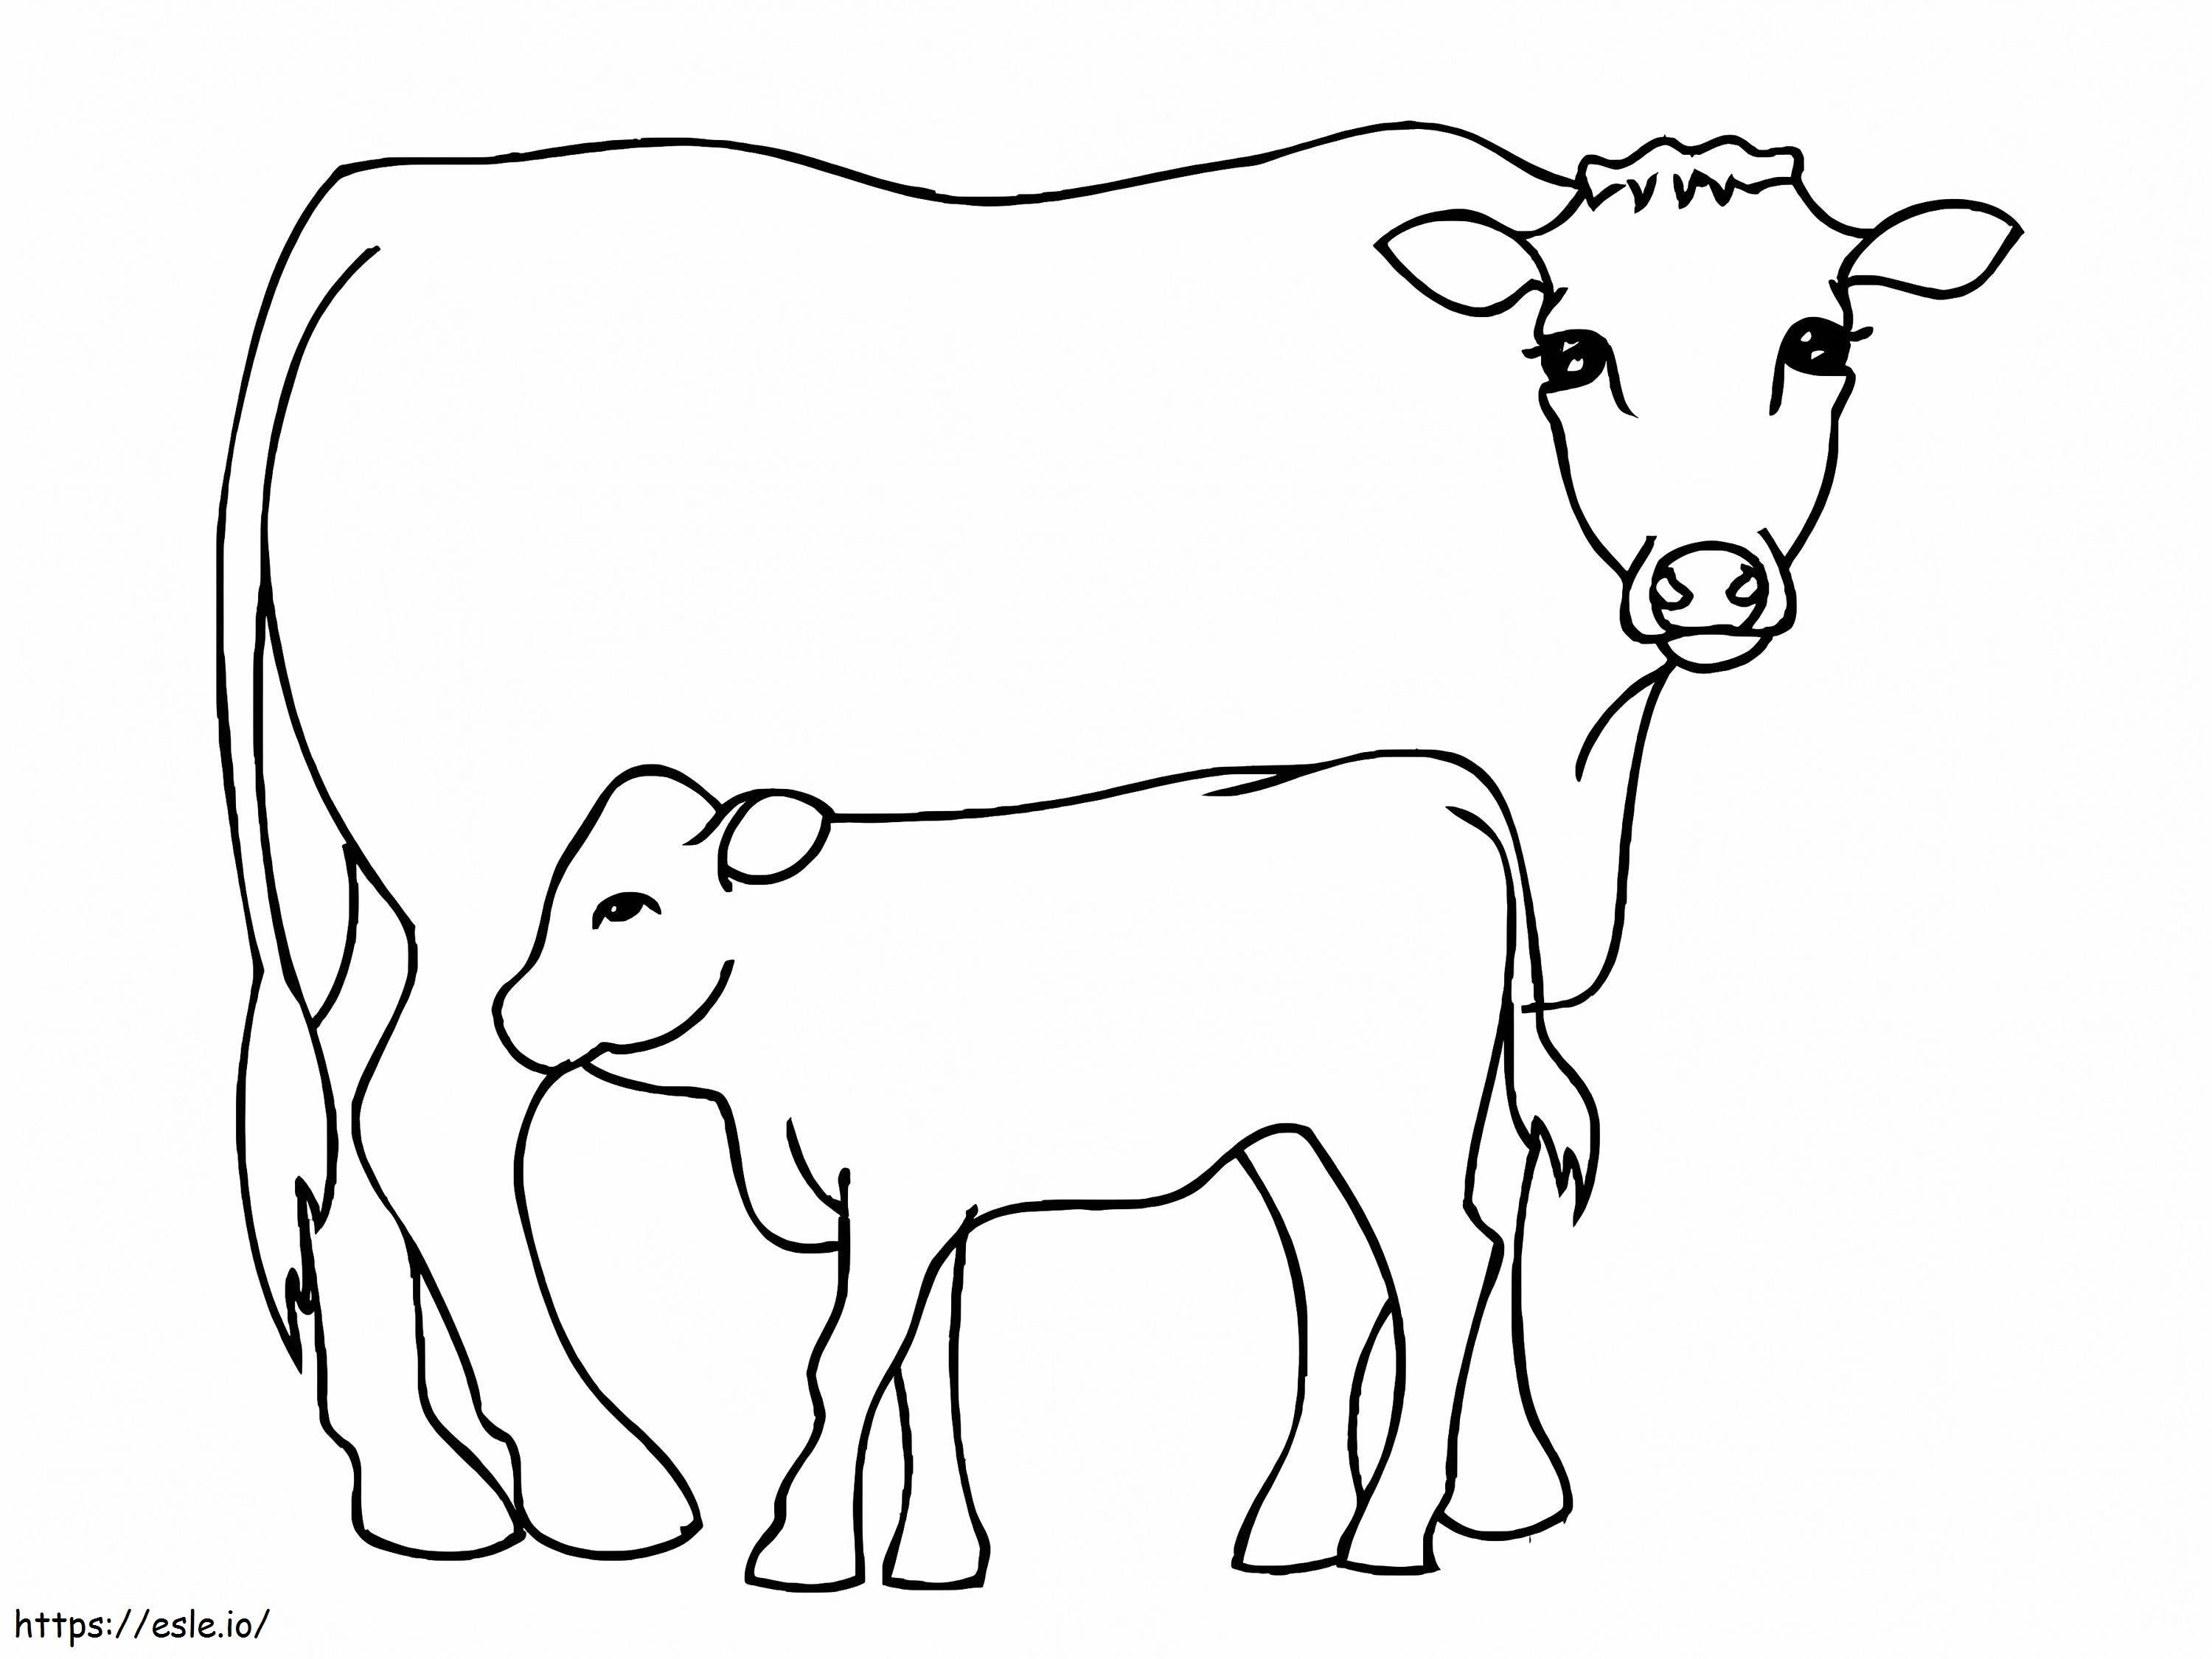 Vaca și vițelul 2 de colorat